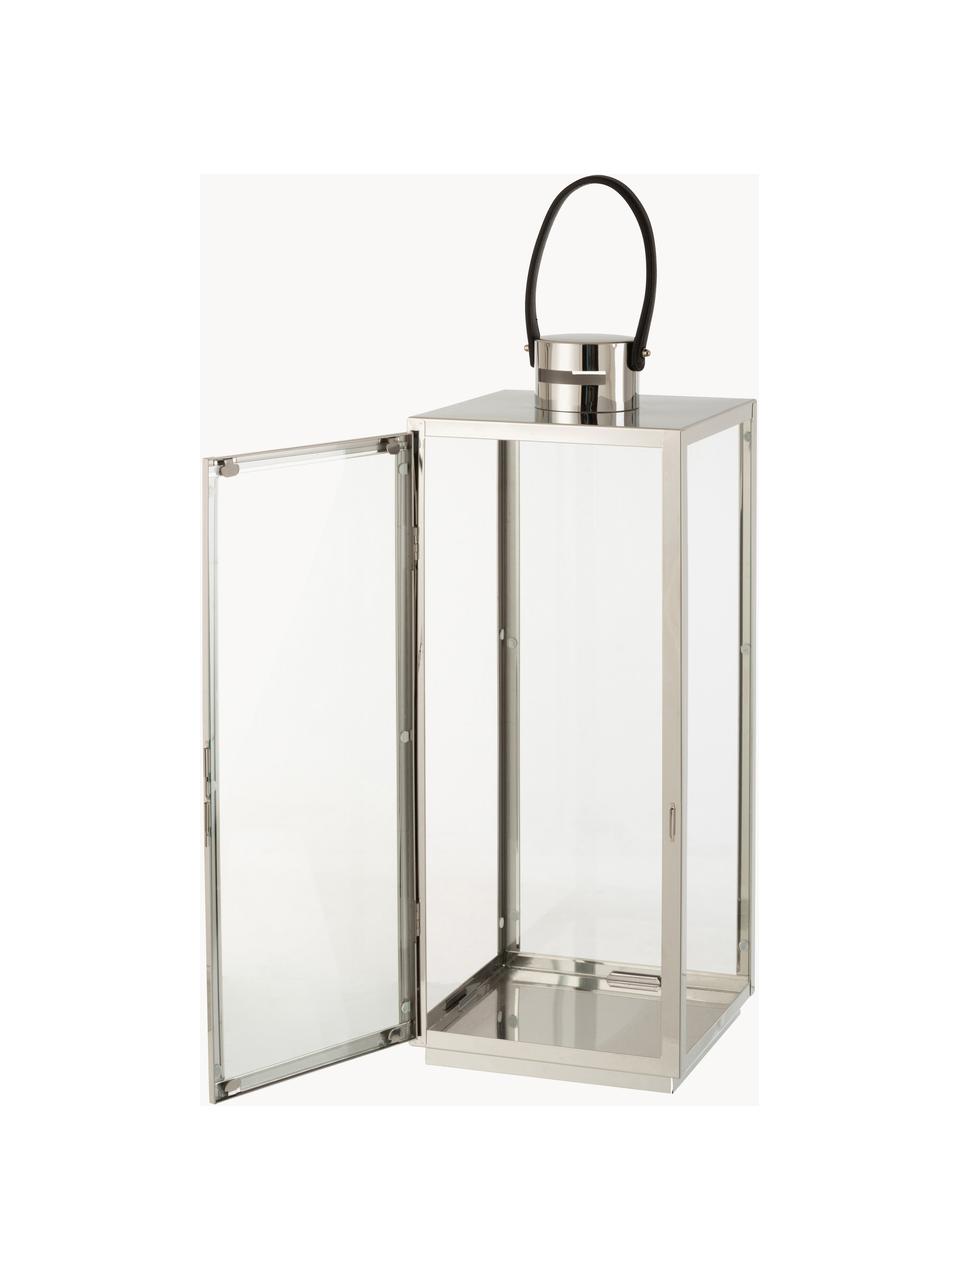 Lanterne Trevas, Couleur argentée, transparent, larg. 21 x haut. 53 cm